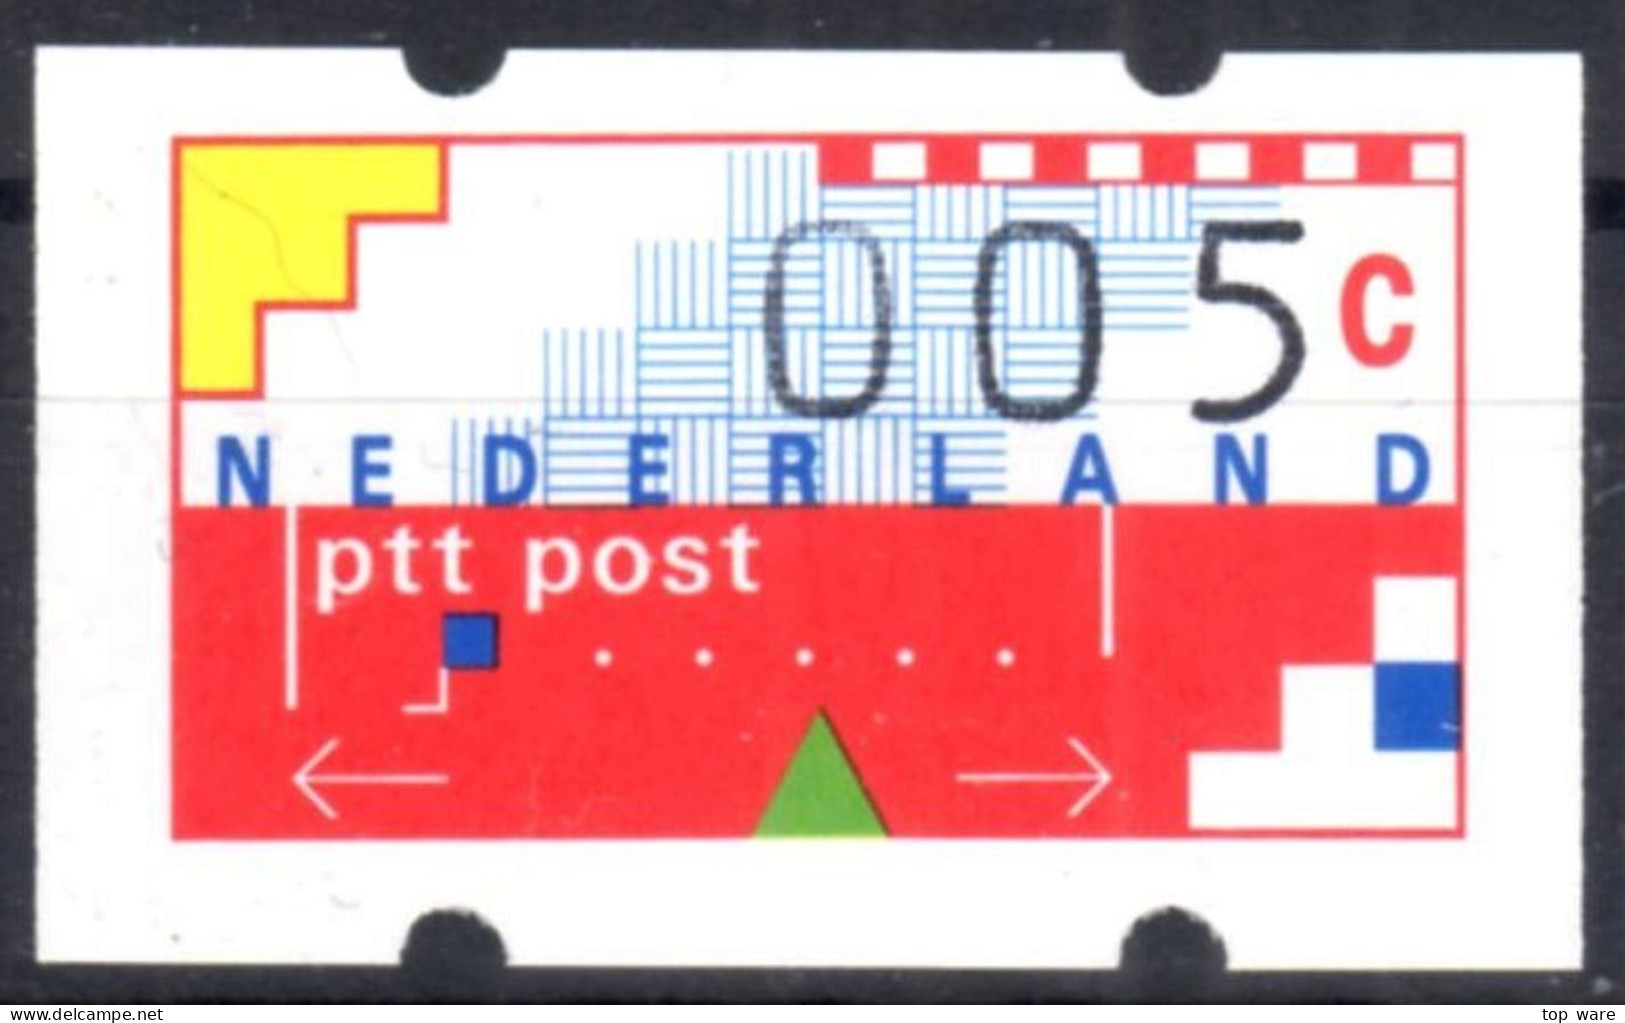 Niederlande Nederland ATM 1 Kleinstwert 5 Cent Postfrisch Mit Quittung Frama Klüssendorf Automatenmarken Etiquetas - Machine Labels [ATM]